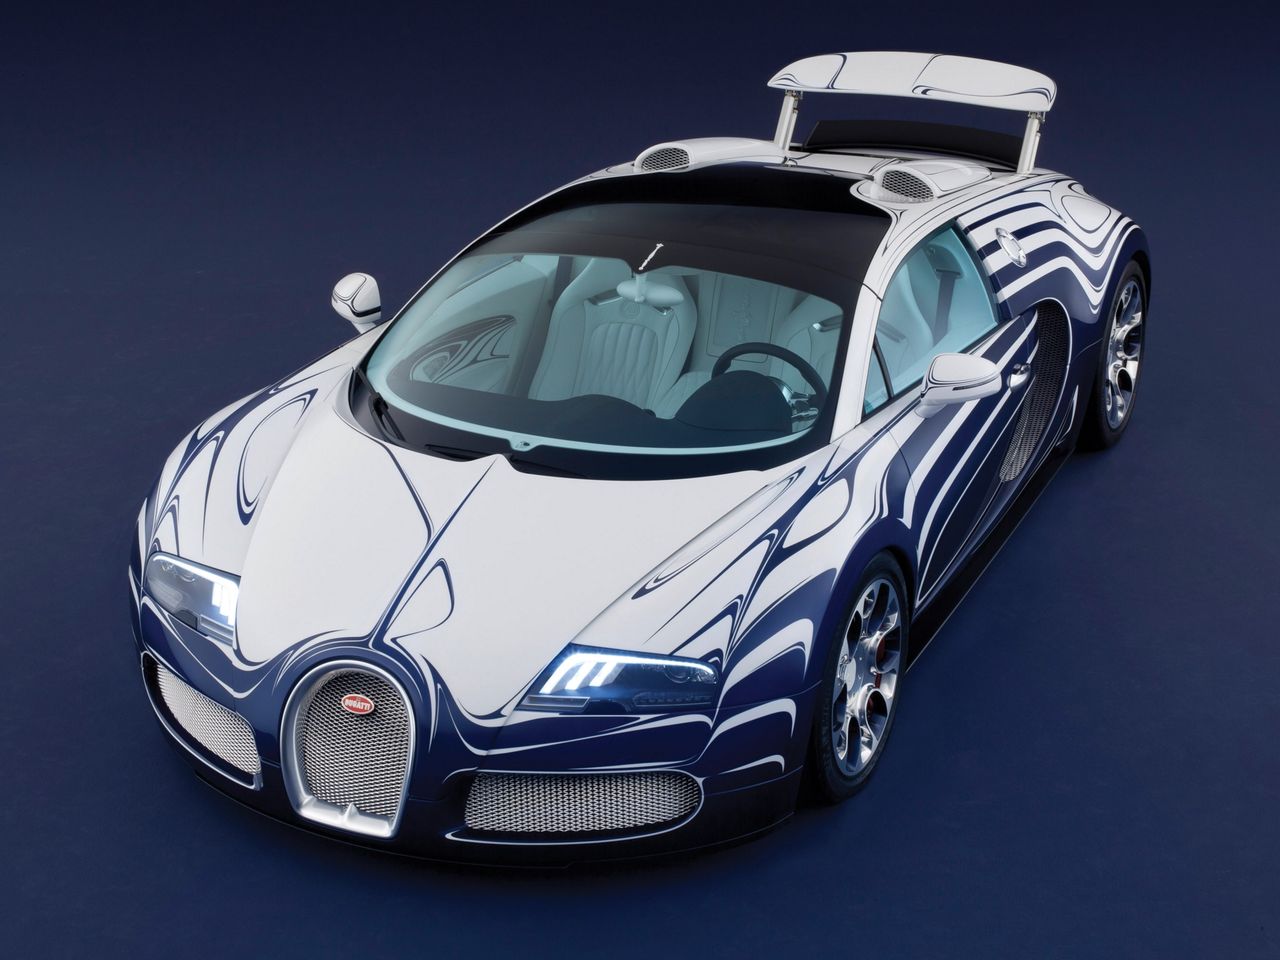 W 2011 roku Bugatti przy współpracy z Königliche Porzellan-Manufaktur stworzyło jeden z najbardziej niesamowitych egzemplarzy Veyrona. L'Or Blanc został pokryty niezwykłym biało-niebieskim lakierem z misternym wzorem. Owocem współpracy z Königliche Porzellan-Manufaktur były dodatki z porcelany. Ten nietypowy jak na motoryzację dodatek można znaleźć na pokrywie wlewu paliwa i na centralnym panelu między fotelami.